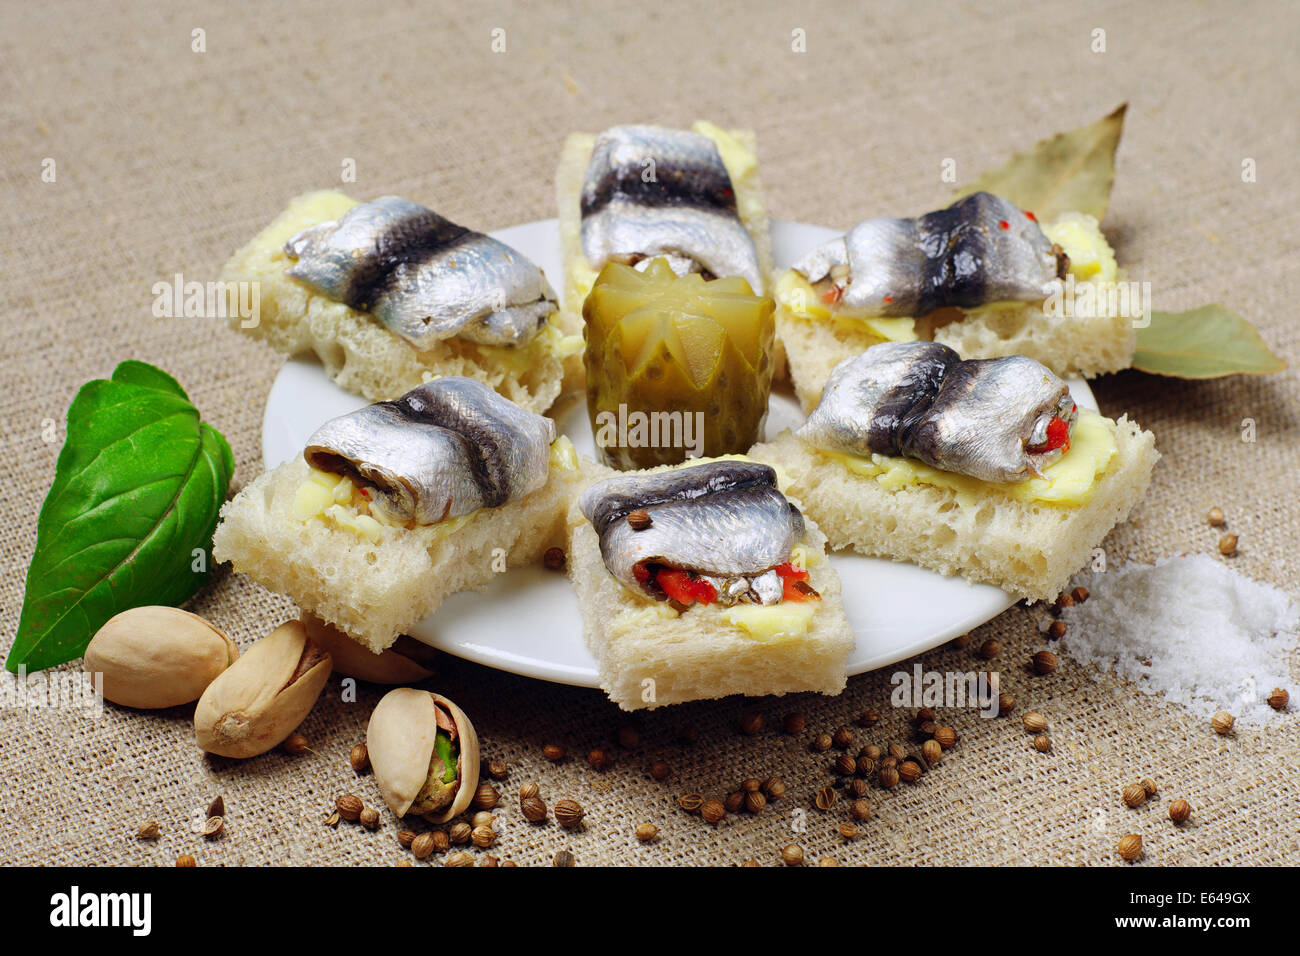 Sandwiches mit gesalzener Fisch auf einem Teller Stockfoto